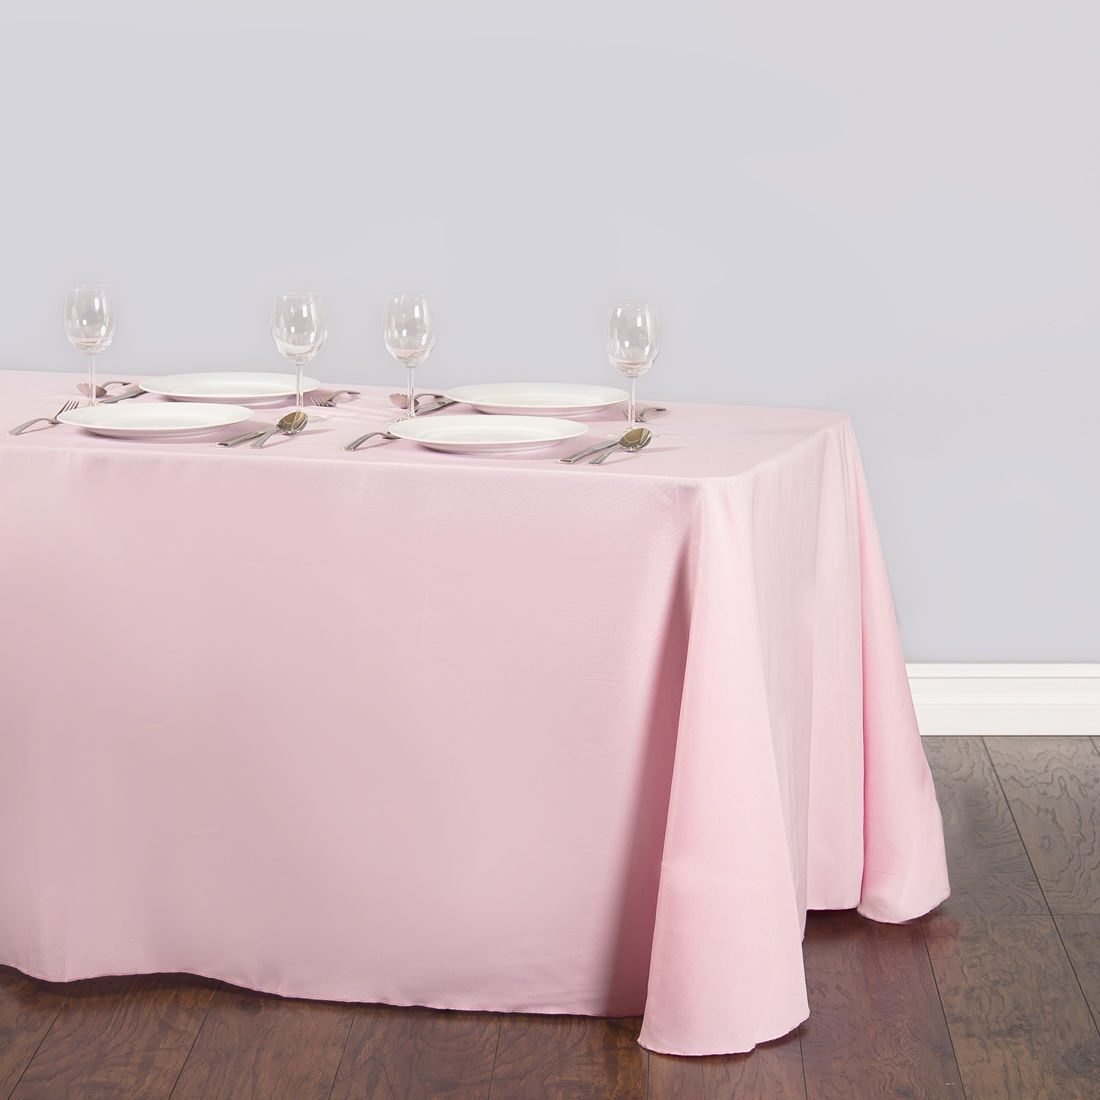 Скатерть розового цвета. Скатерть на свадебный стол. Розовая скатерть. Скатерть на стол для свадьбы. Скатерть на президиум.